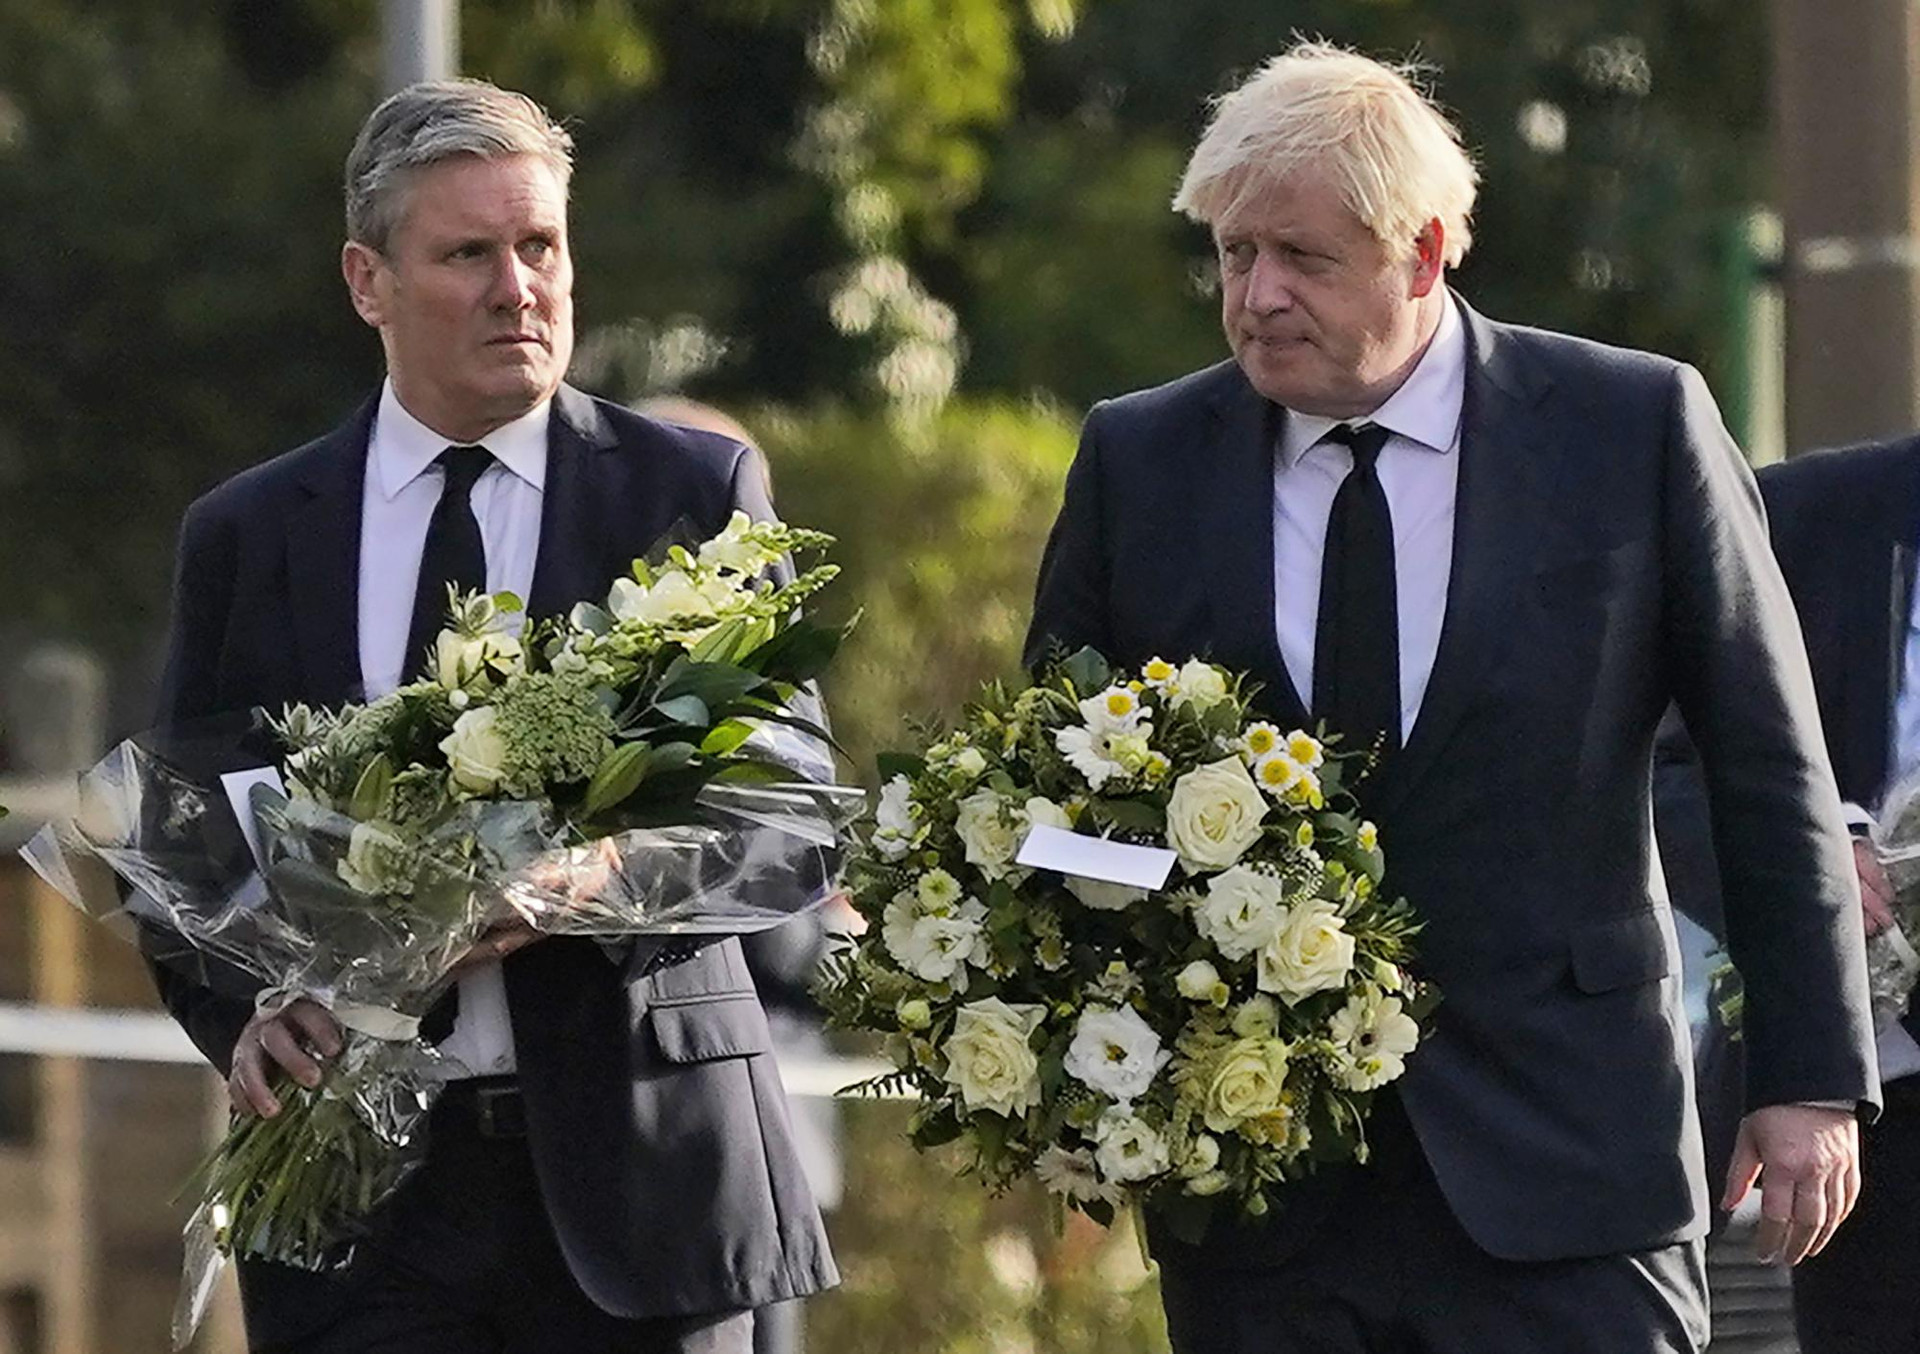 Thủ tướng Anh Boris Johnson (phía bên phải) và Lãnh đạo Đảng Lao động Keir Starmer đến đặt hoa viếng tại nơi một thành viên Quốc hội bị đâm hôm 15/10 ở thị trấn Leigh-on-Sea, hạt Essex, Anh. Ảnh: AP/Alberto Pezzali.